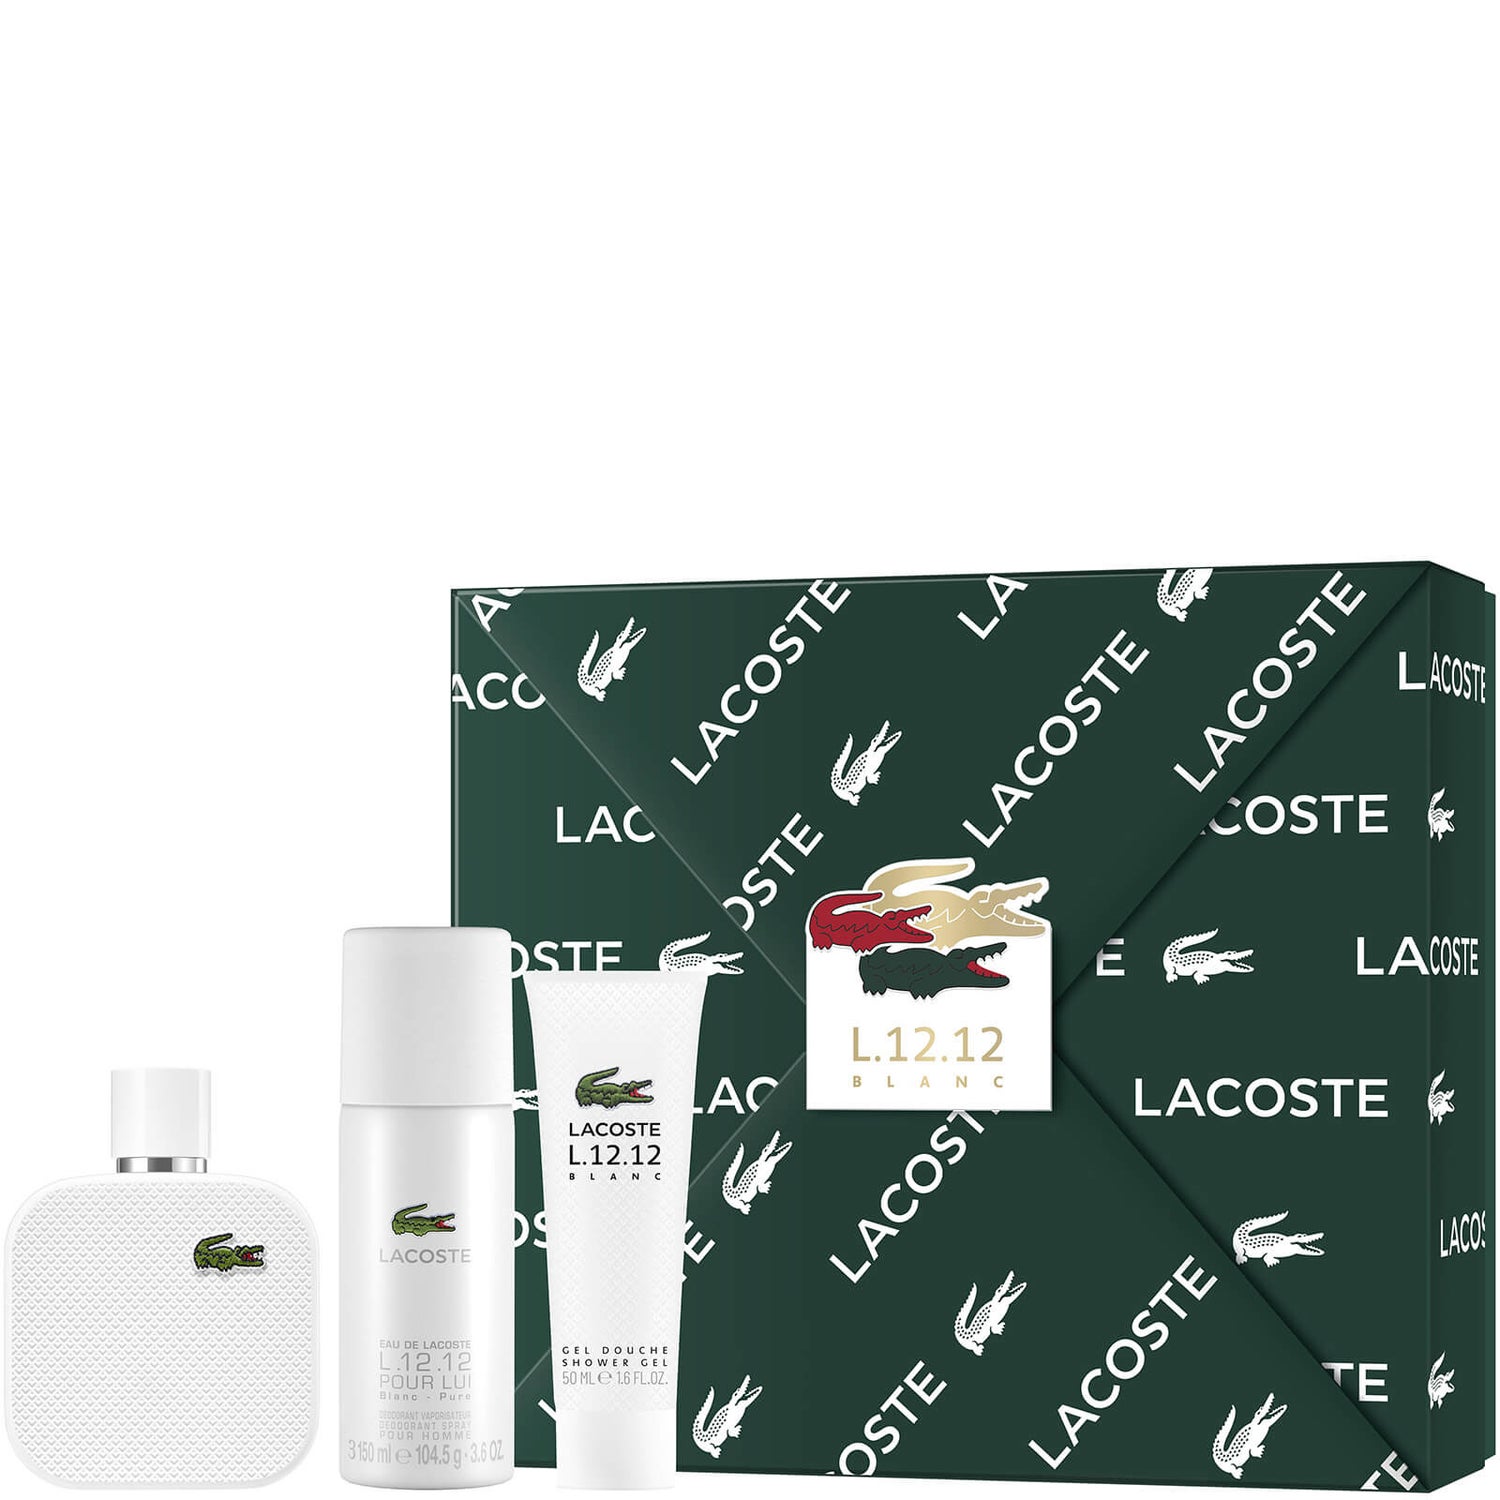 Lacoste L.12.12 Blanc For Him Eau De Toilette 100ml Gift Set (Worth £82.00)